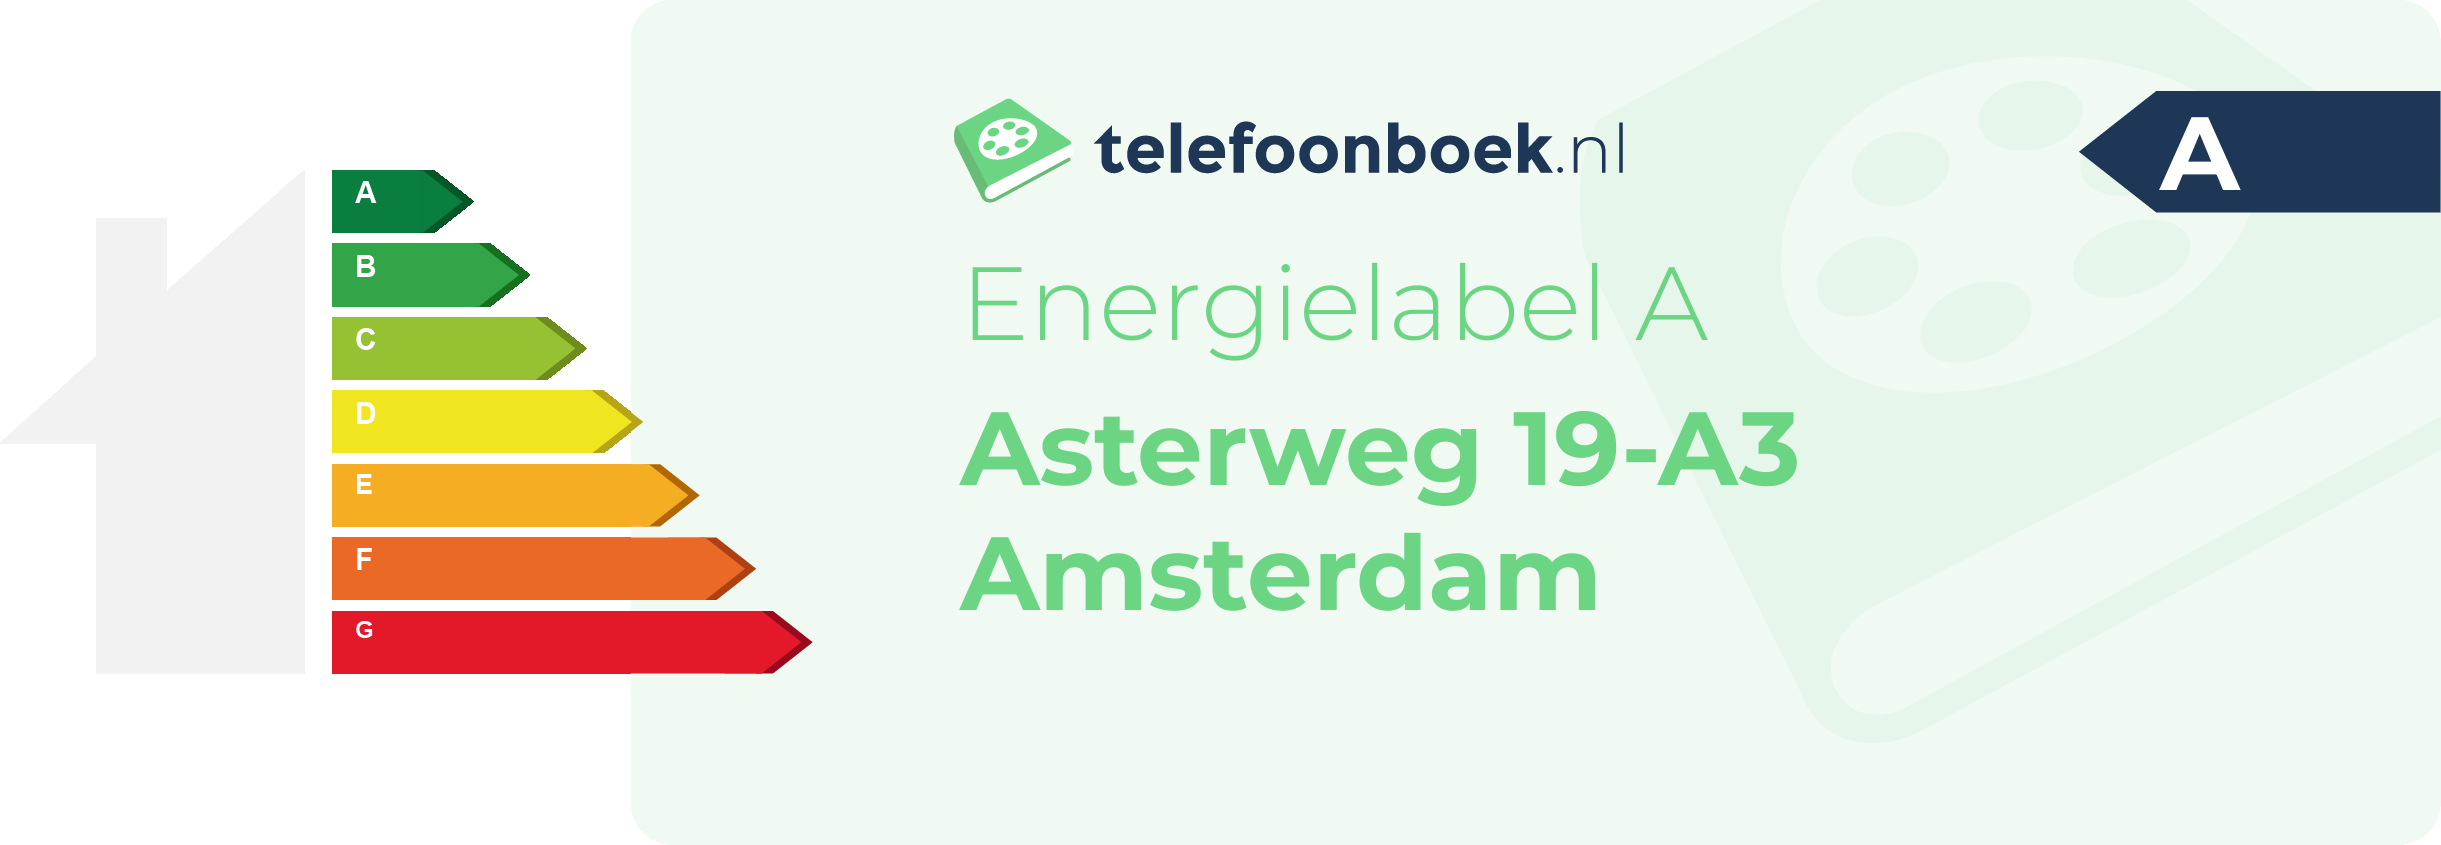 Energielabel Asterweg 19-A3 Amsterdam